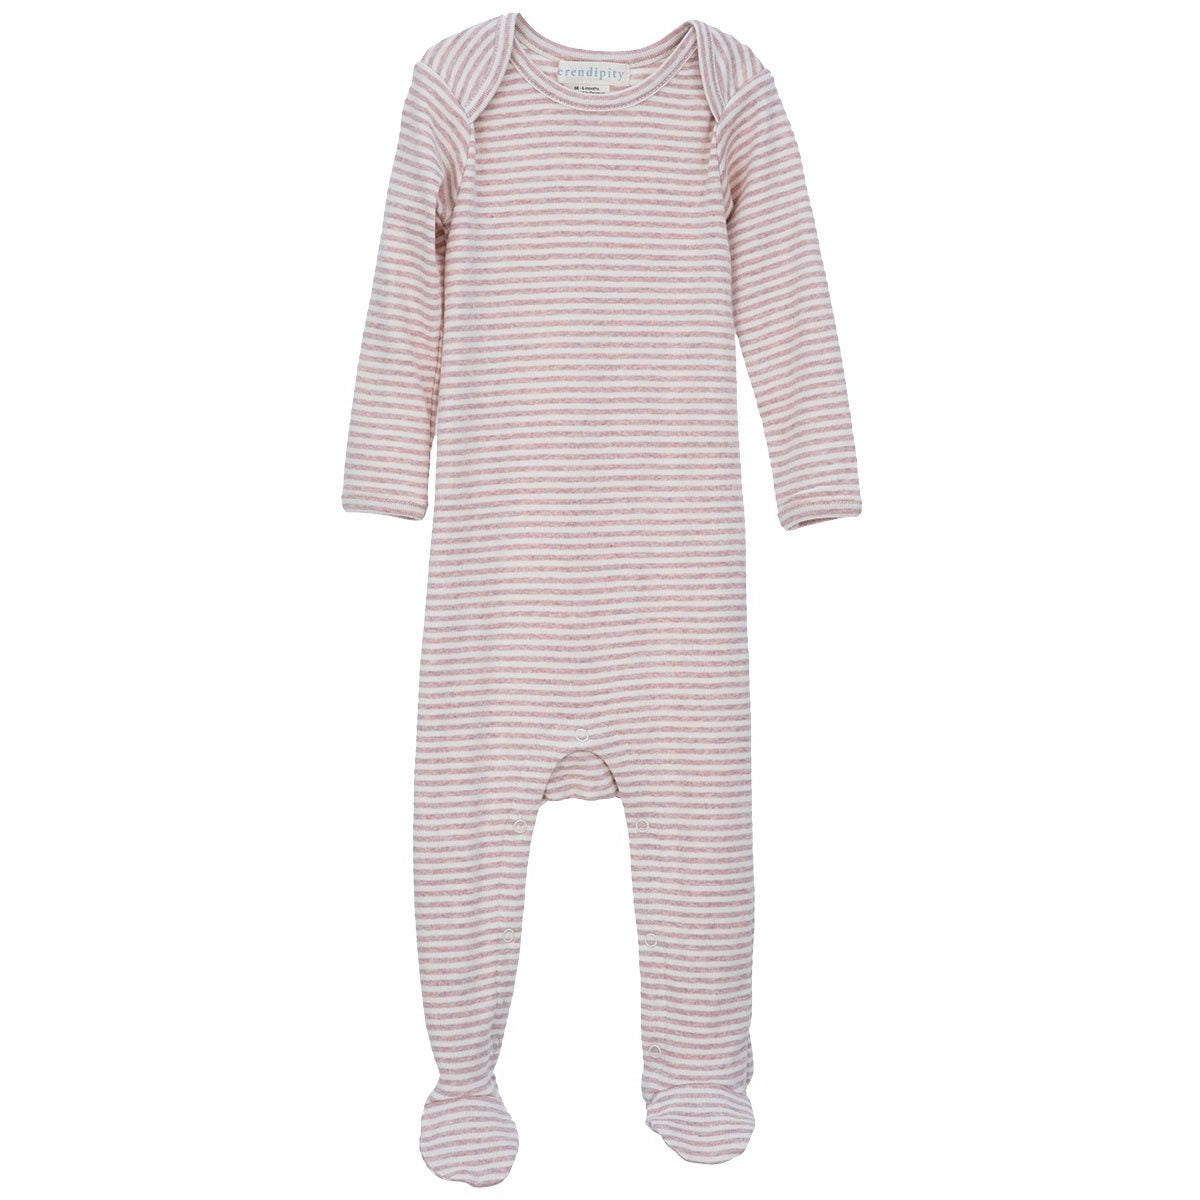 Galbenus Serendipity pijama intreaga bebelusi bumbac organic dungi roz melange